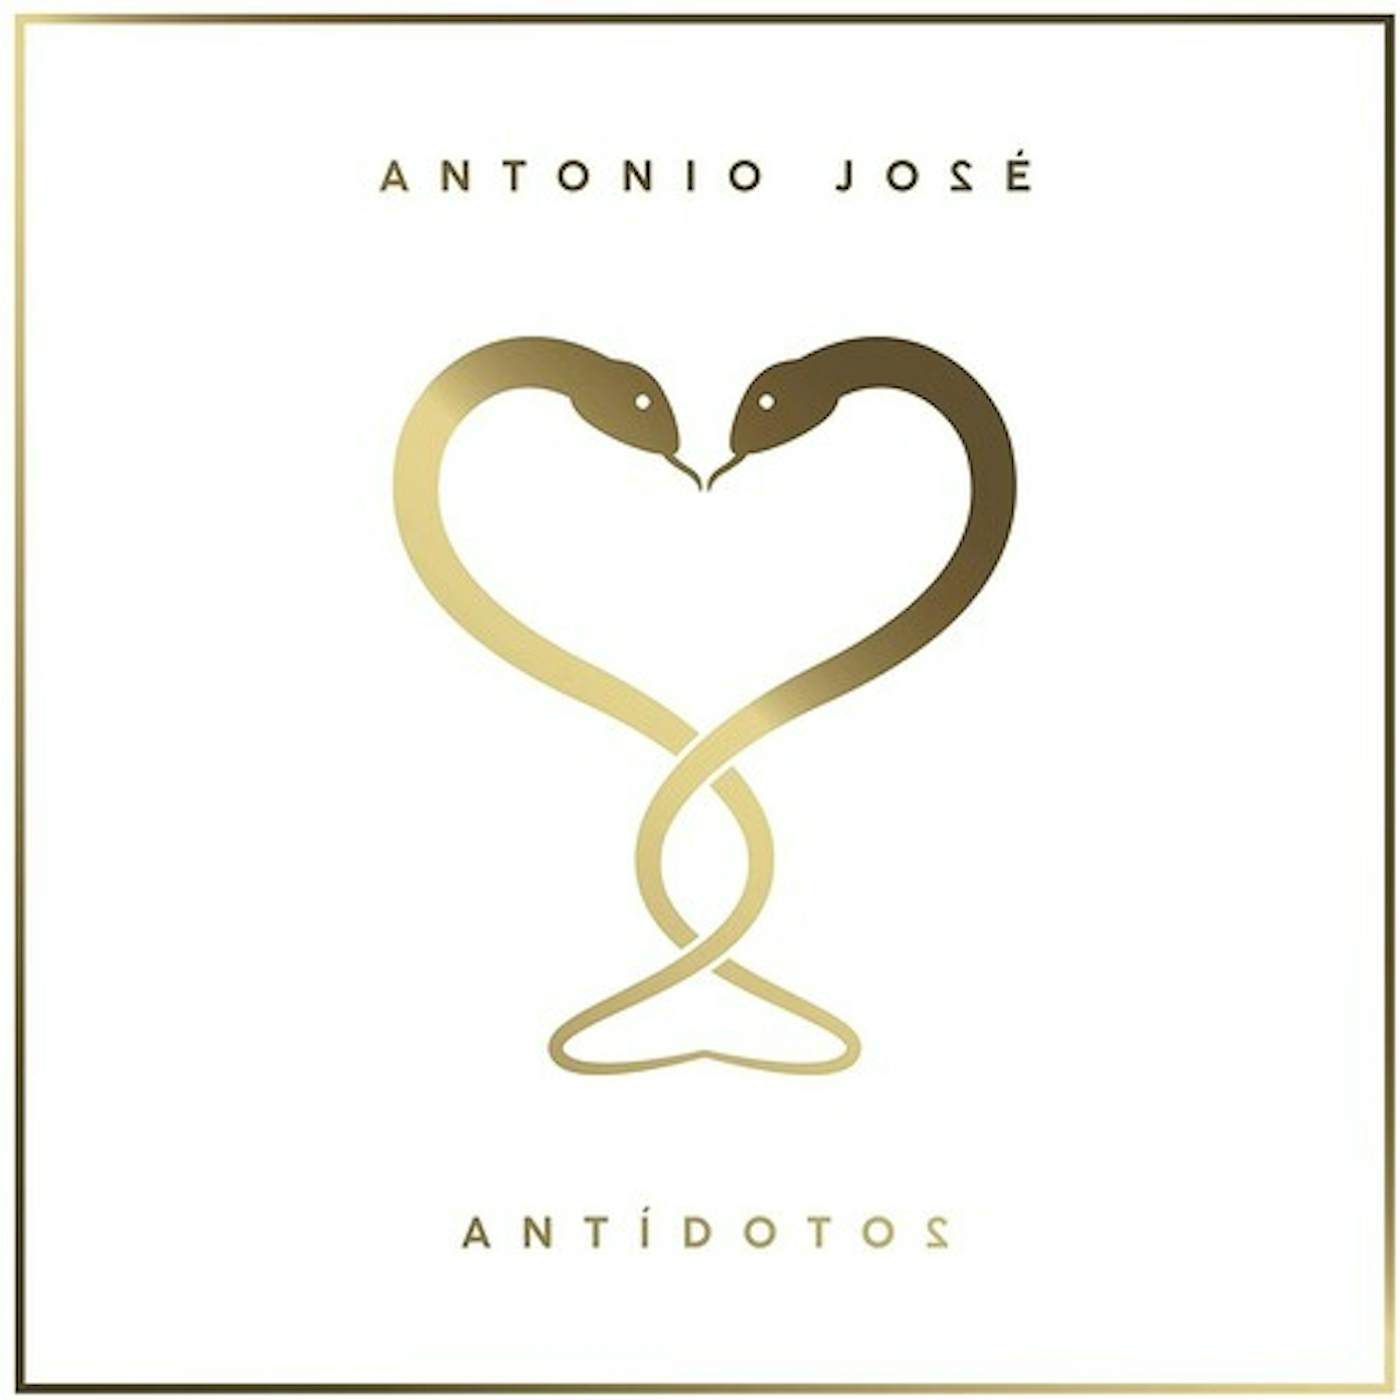 Antonio José ANTIDOTO2 CD